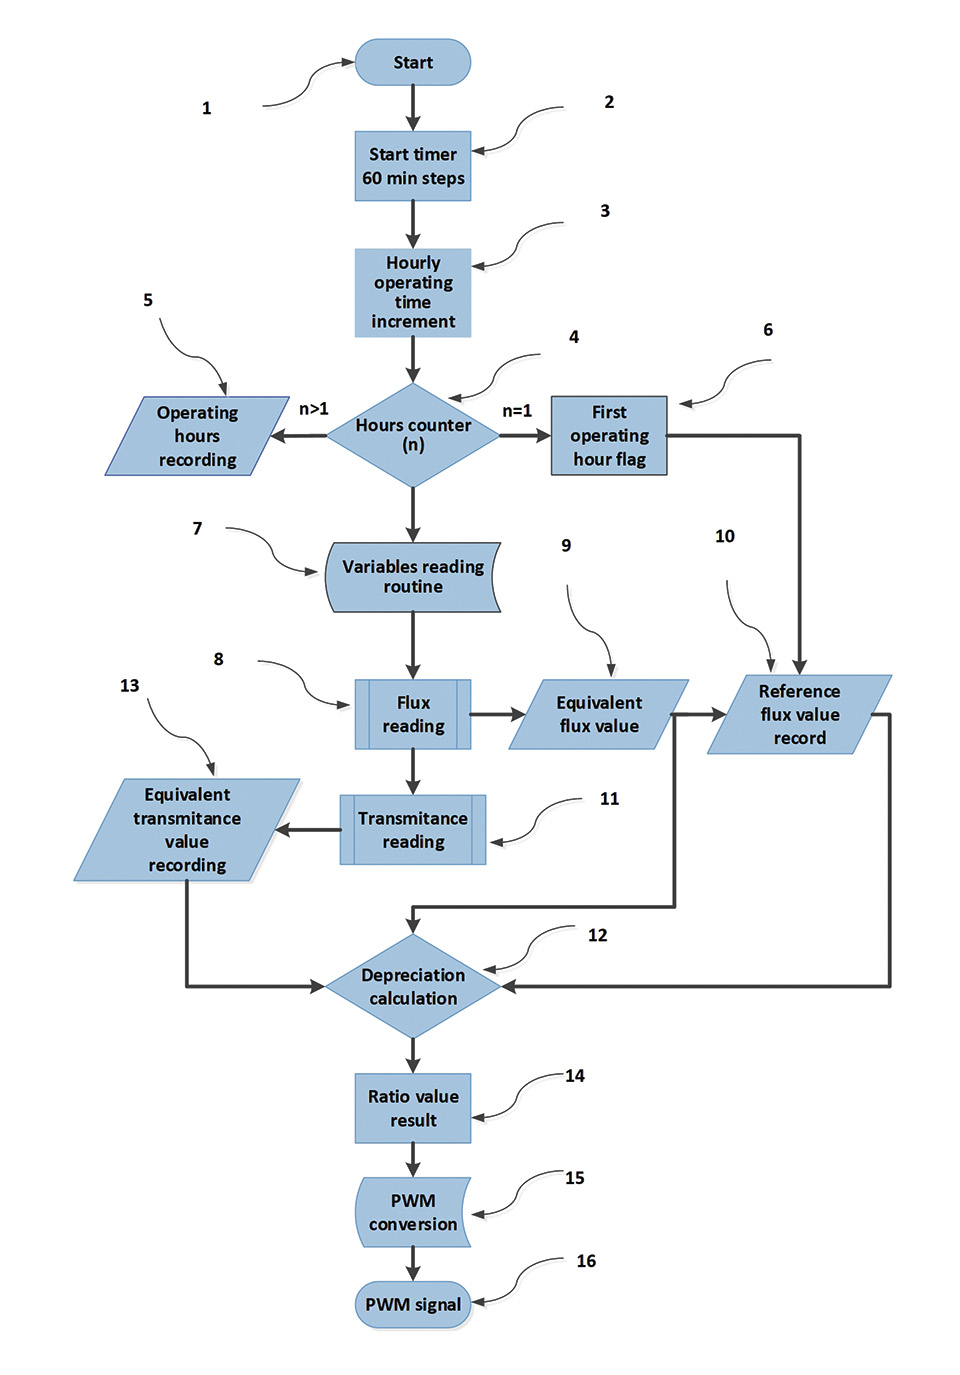 Figure 15: Flow diagram of the BLO process